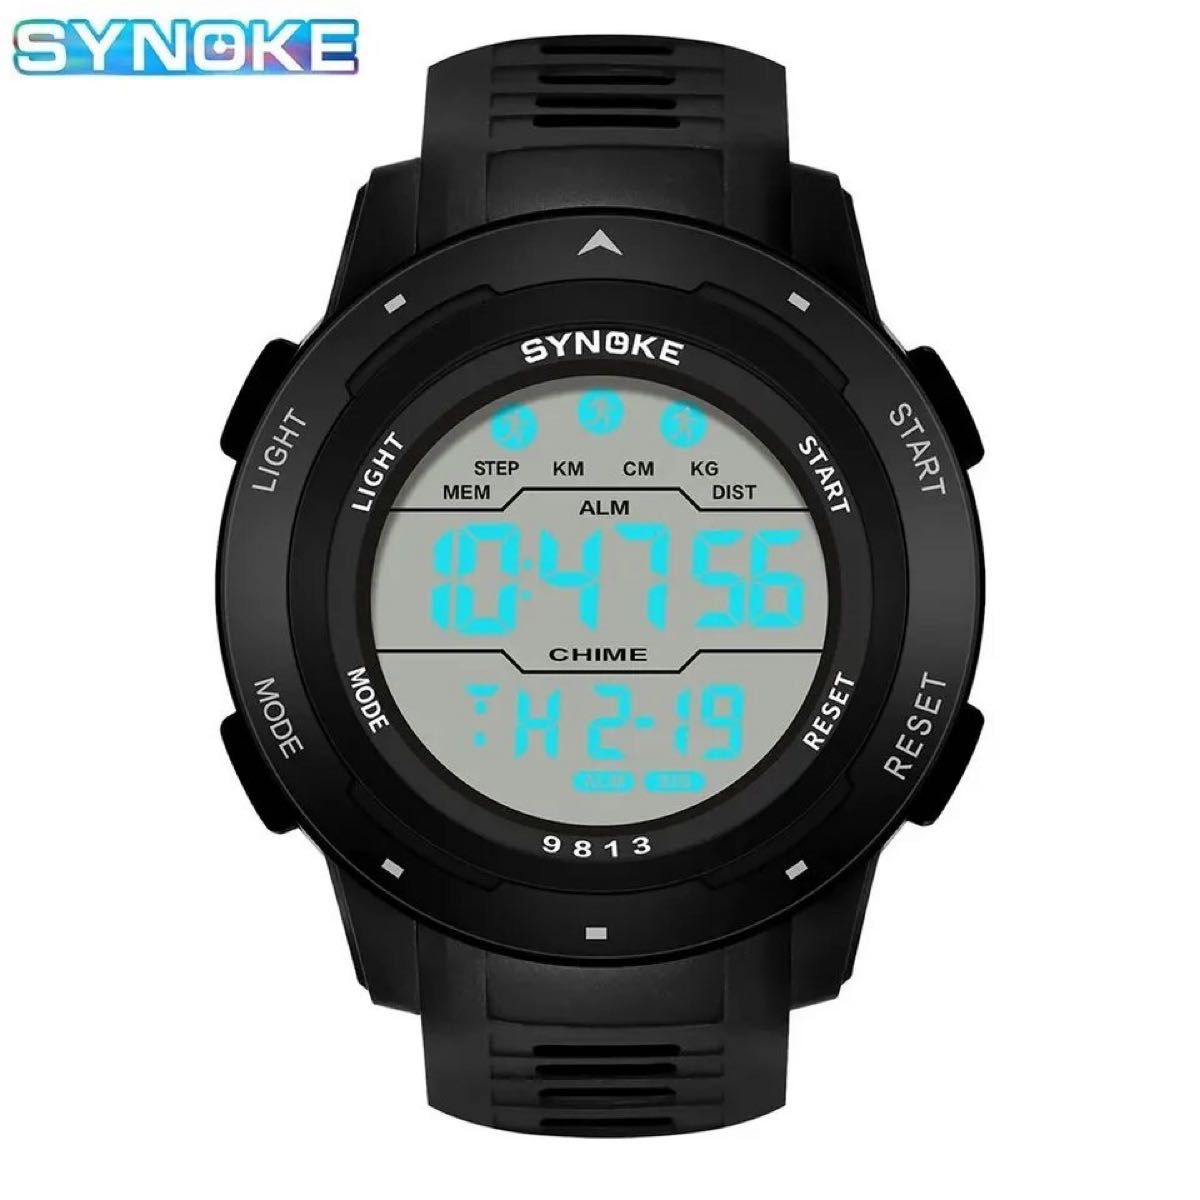 新品 SYNOKEスポーツデジタル 防水 デジタルストップウォッチ メンズ腕時計 9813 ブラック